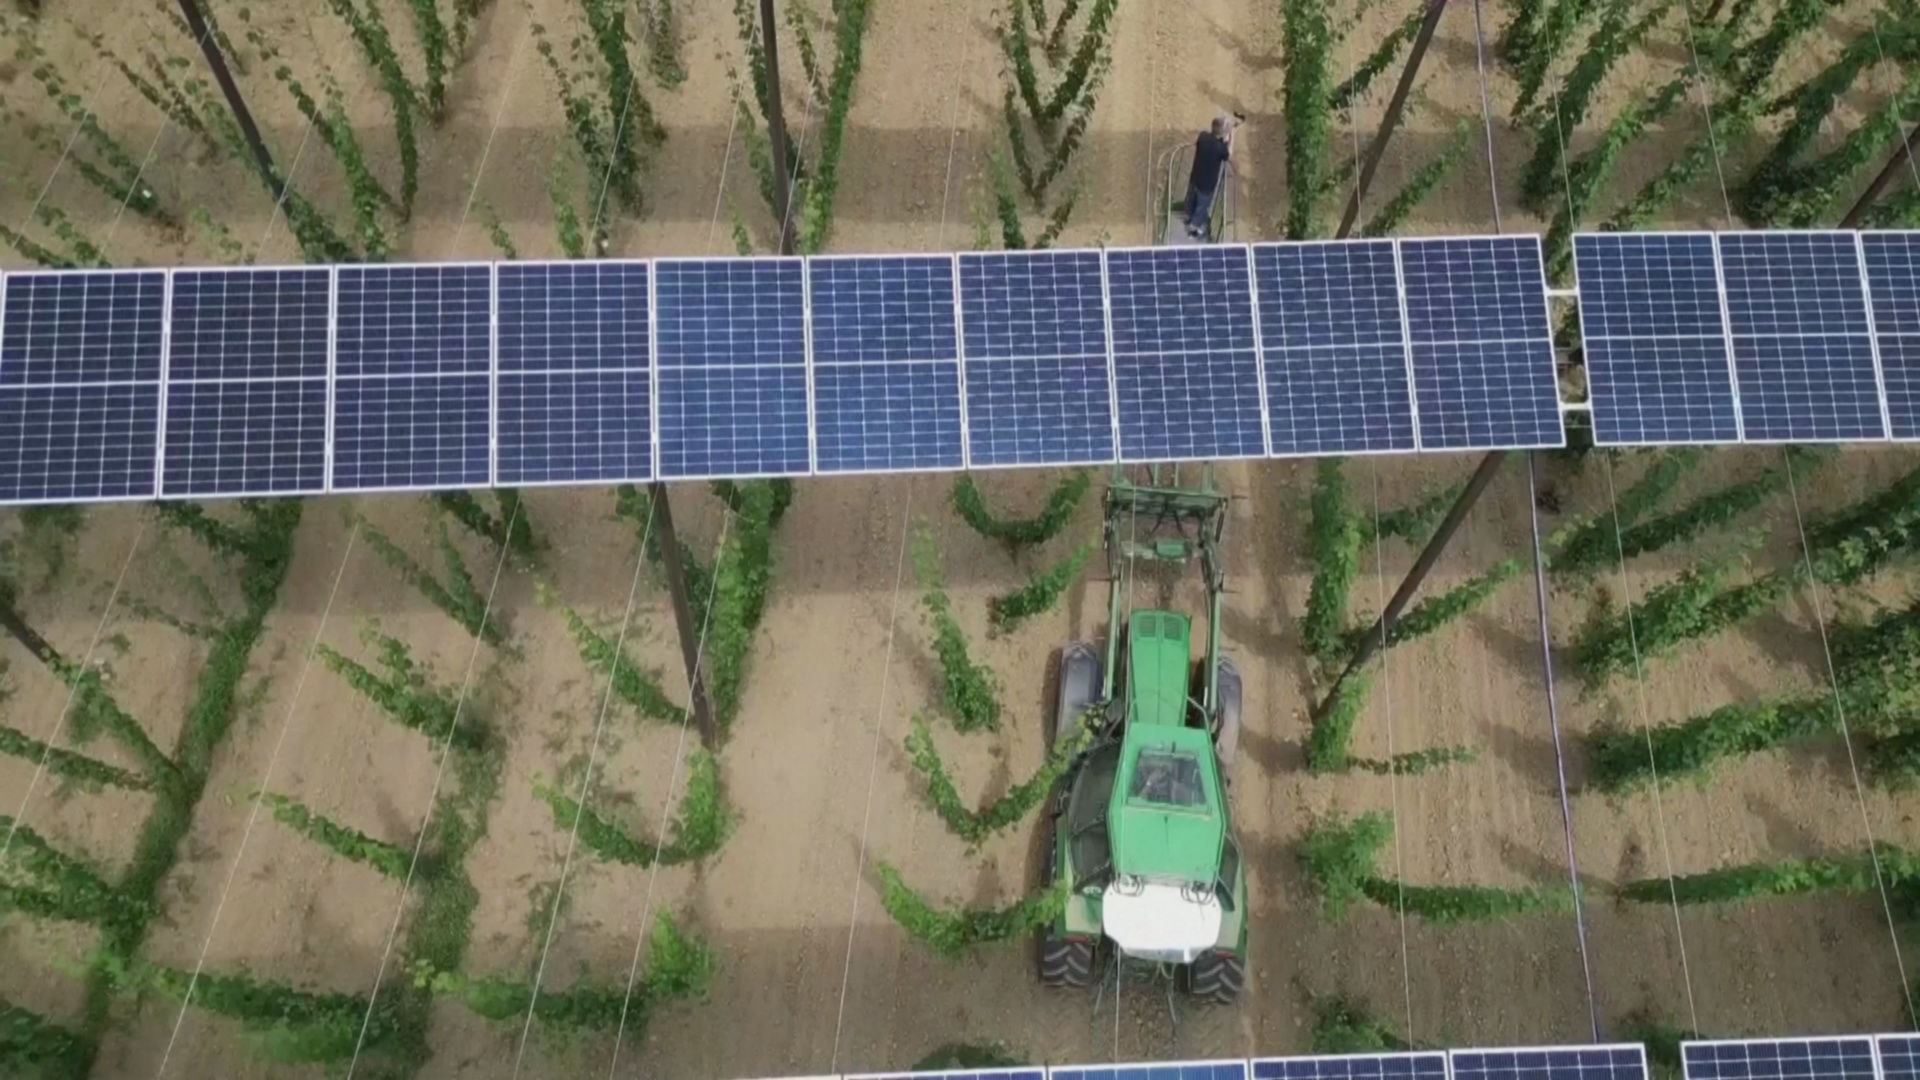 Солнечные панели в огороде: как немецкий фермер увеличивает прибыль